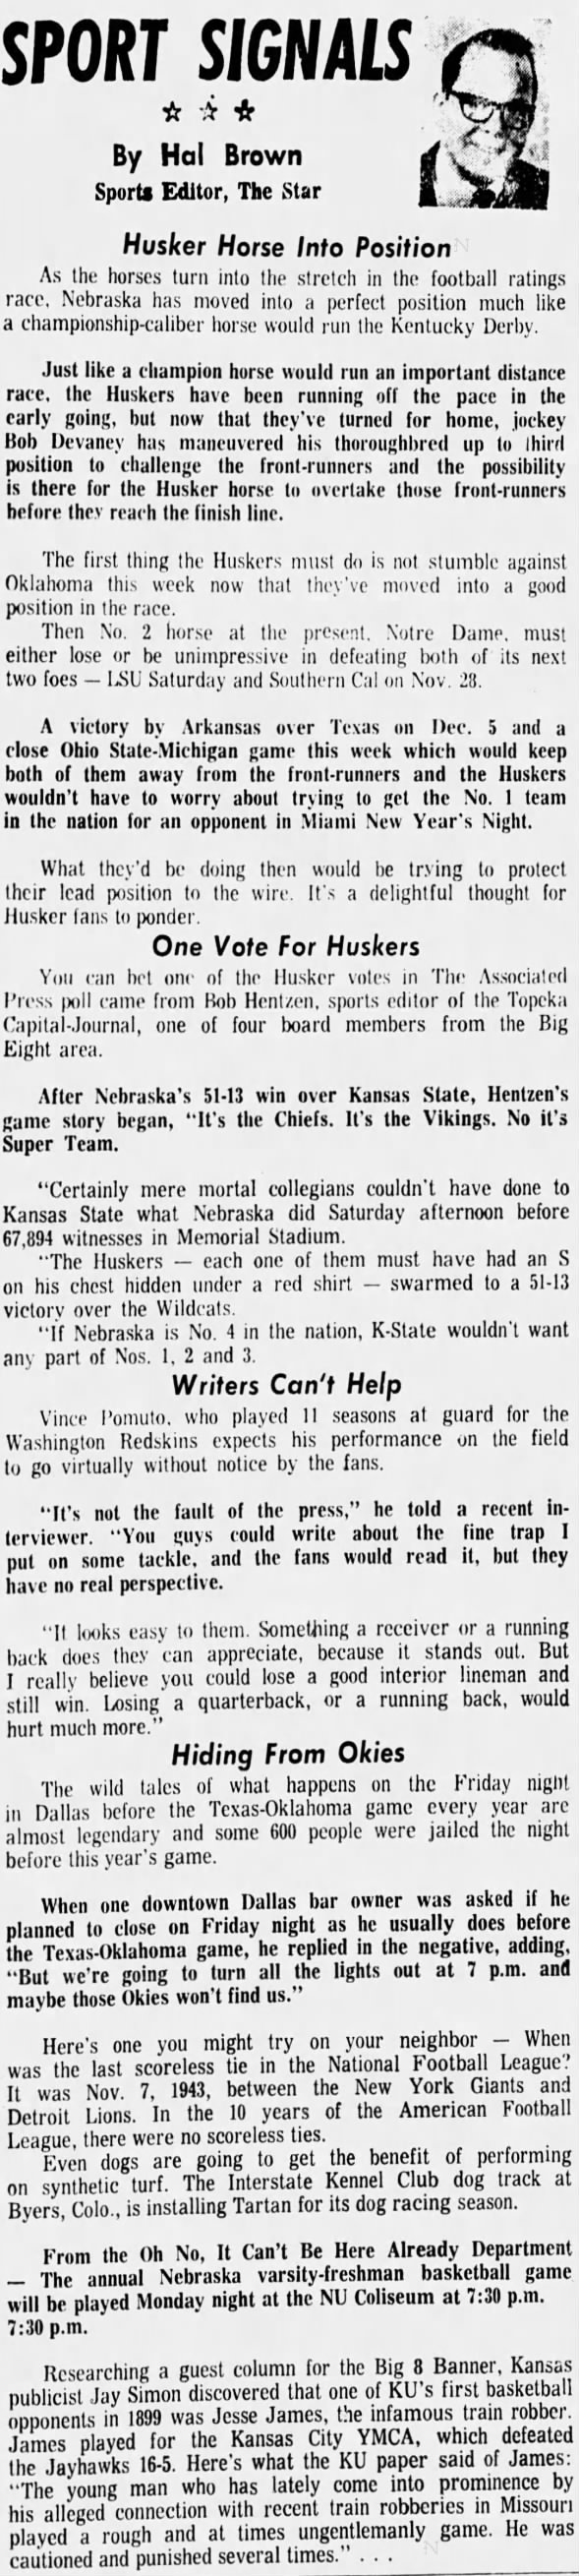 1970.11 Hal Brown column, Oklahoma week